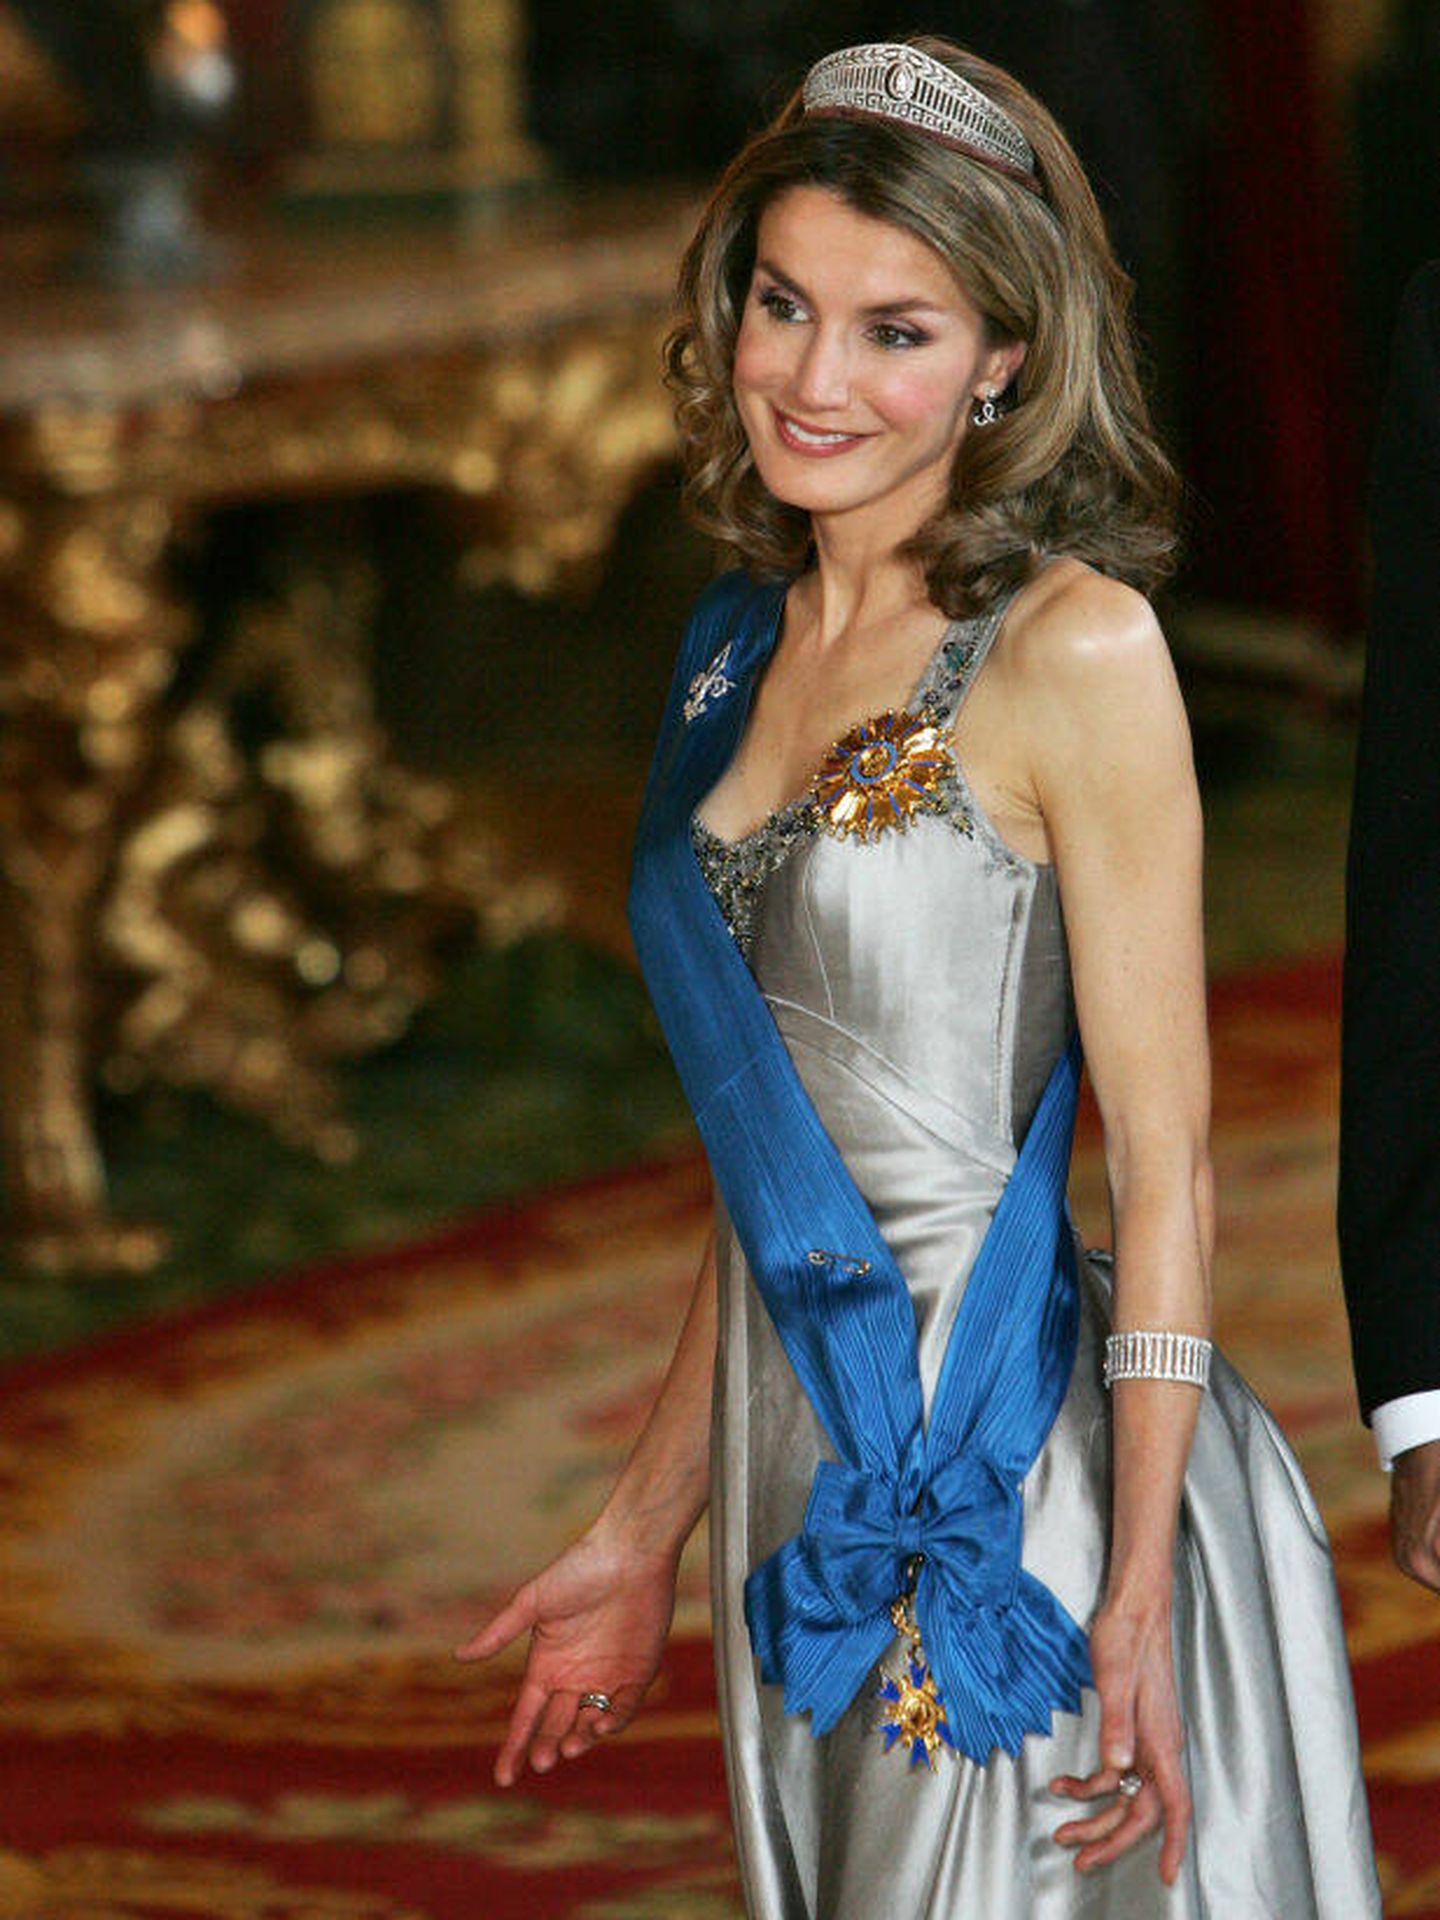 La reina Letizia, entonces princesa, durante una cena de gala. (Getty/Dusko Despotovic/Corbis)